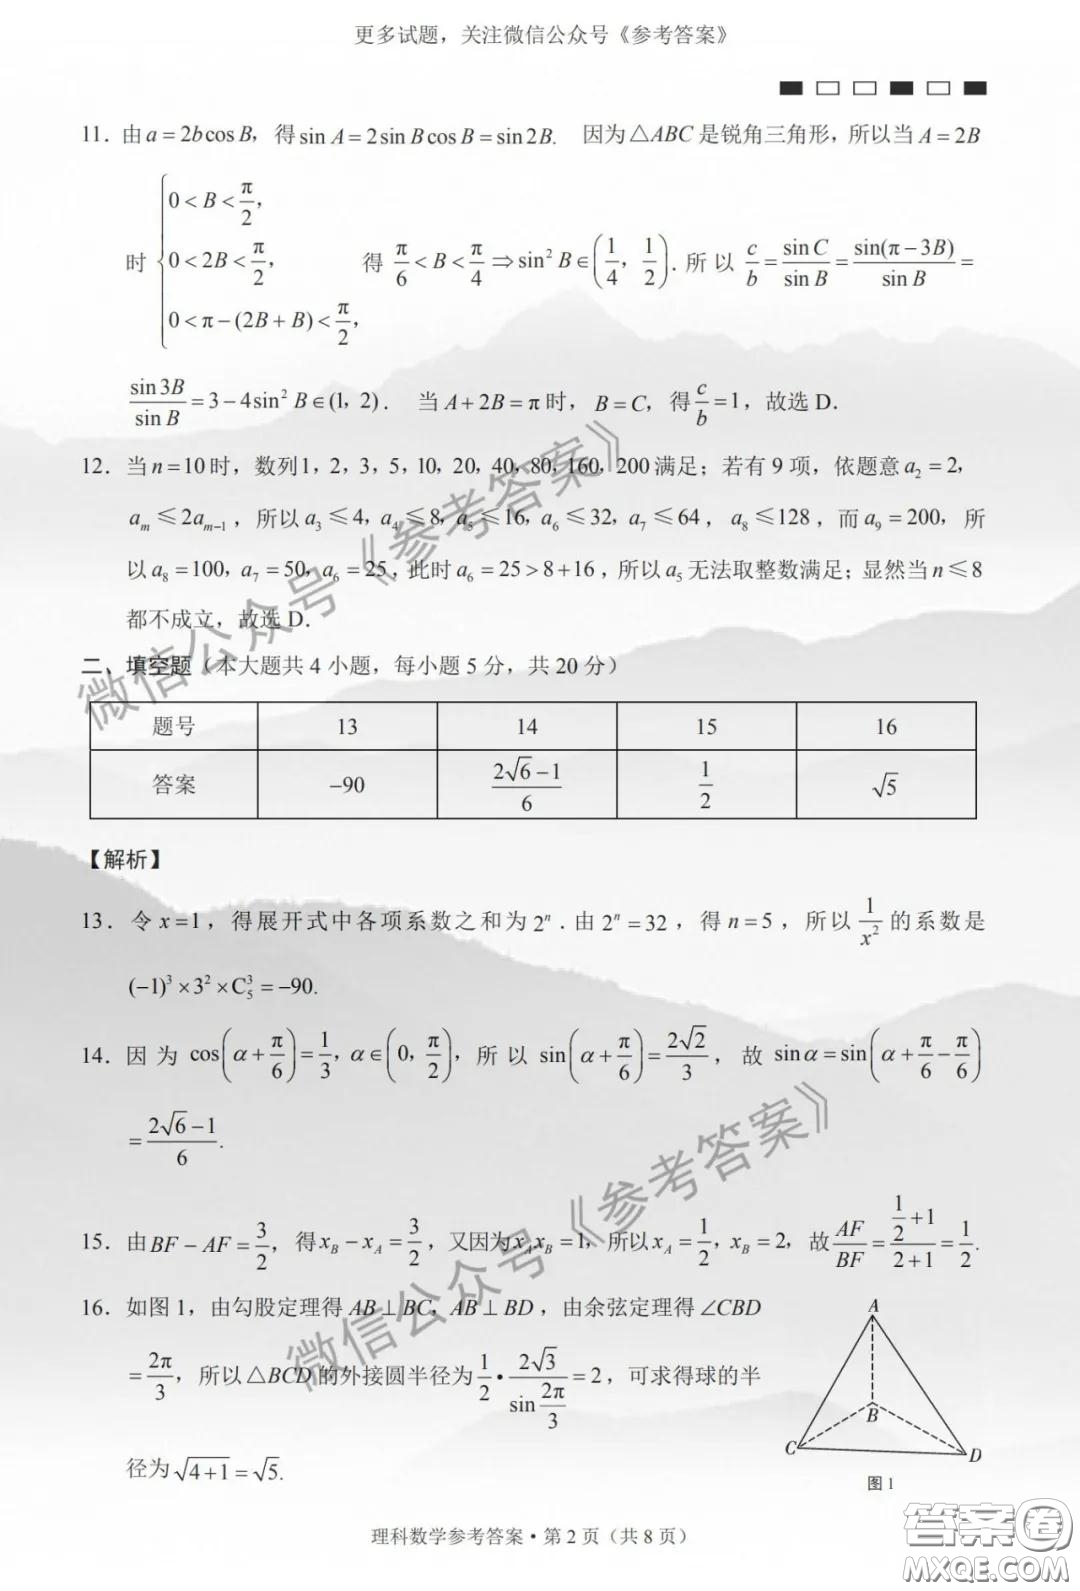 巴蜀中学2020届高考适应性月考卷六理科数学答案